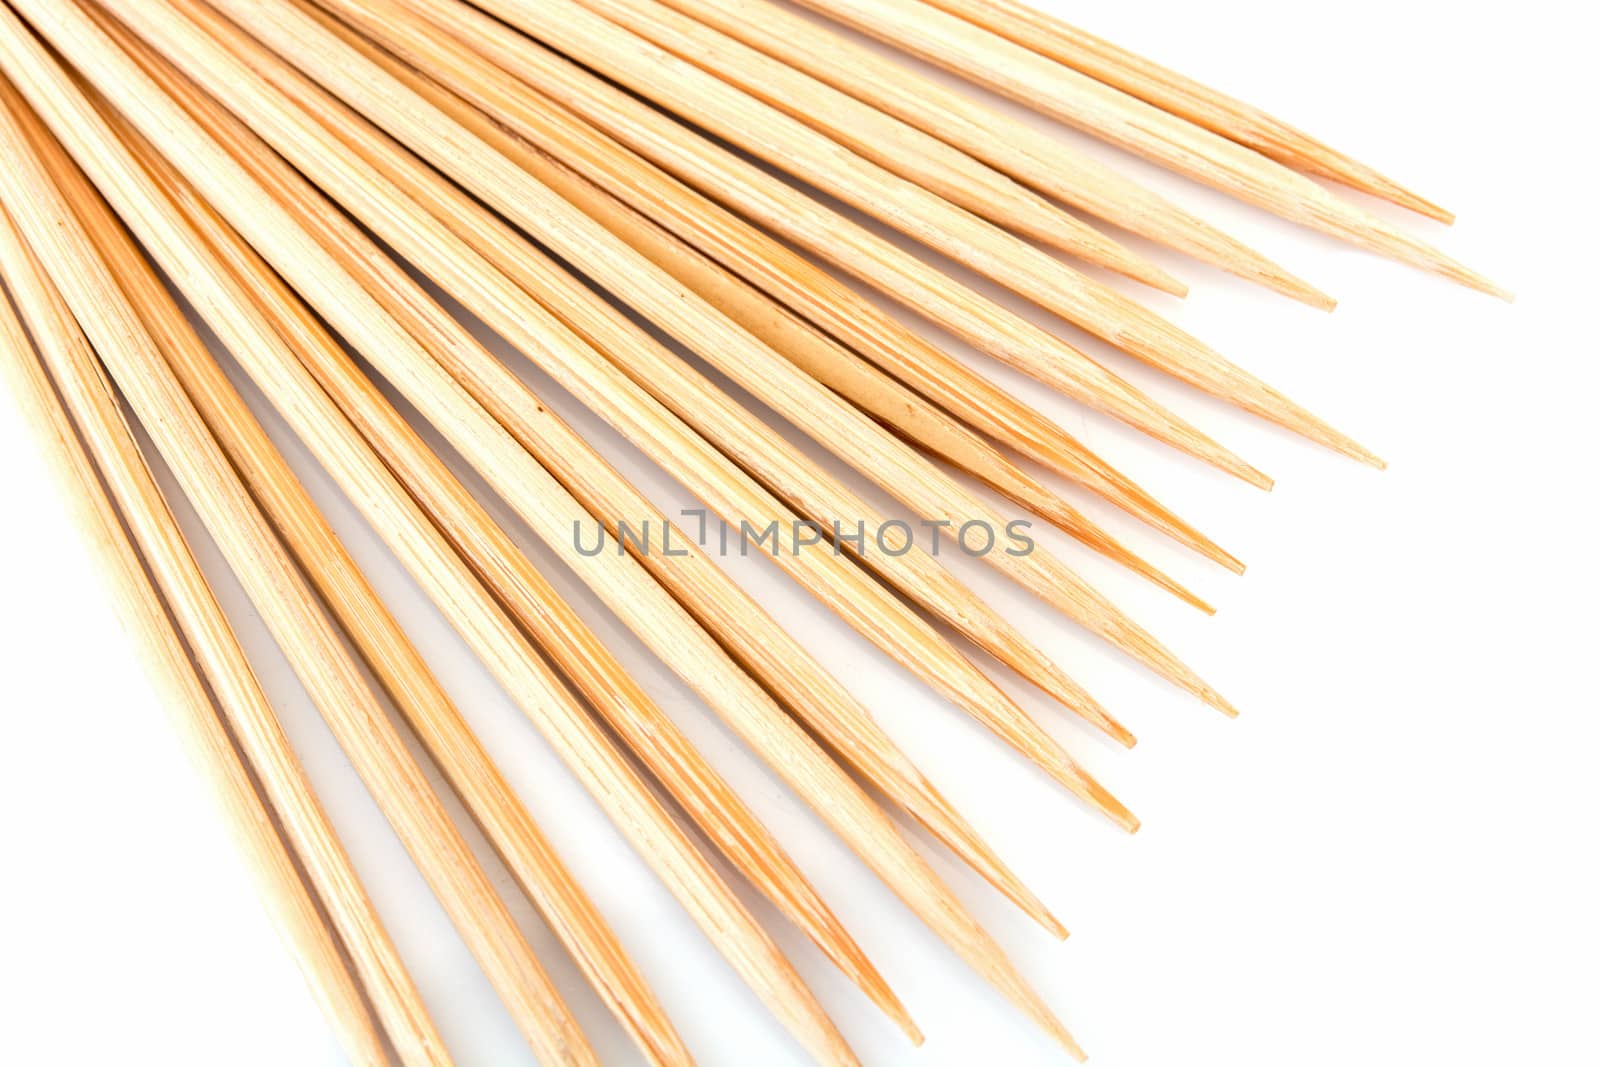 Bamboo toothpicks isolated  by Sorapop